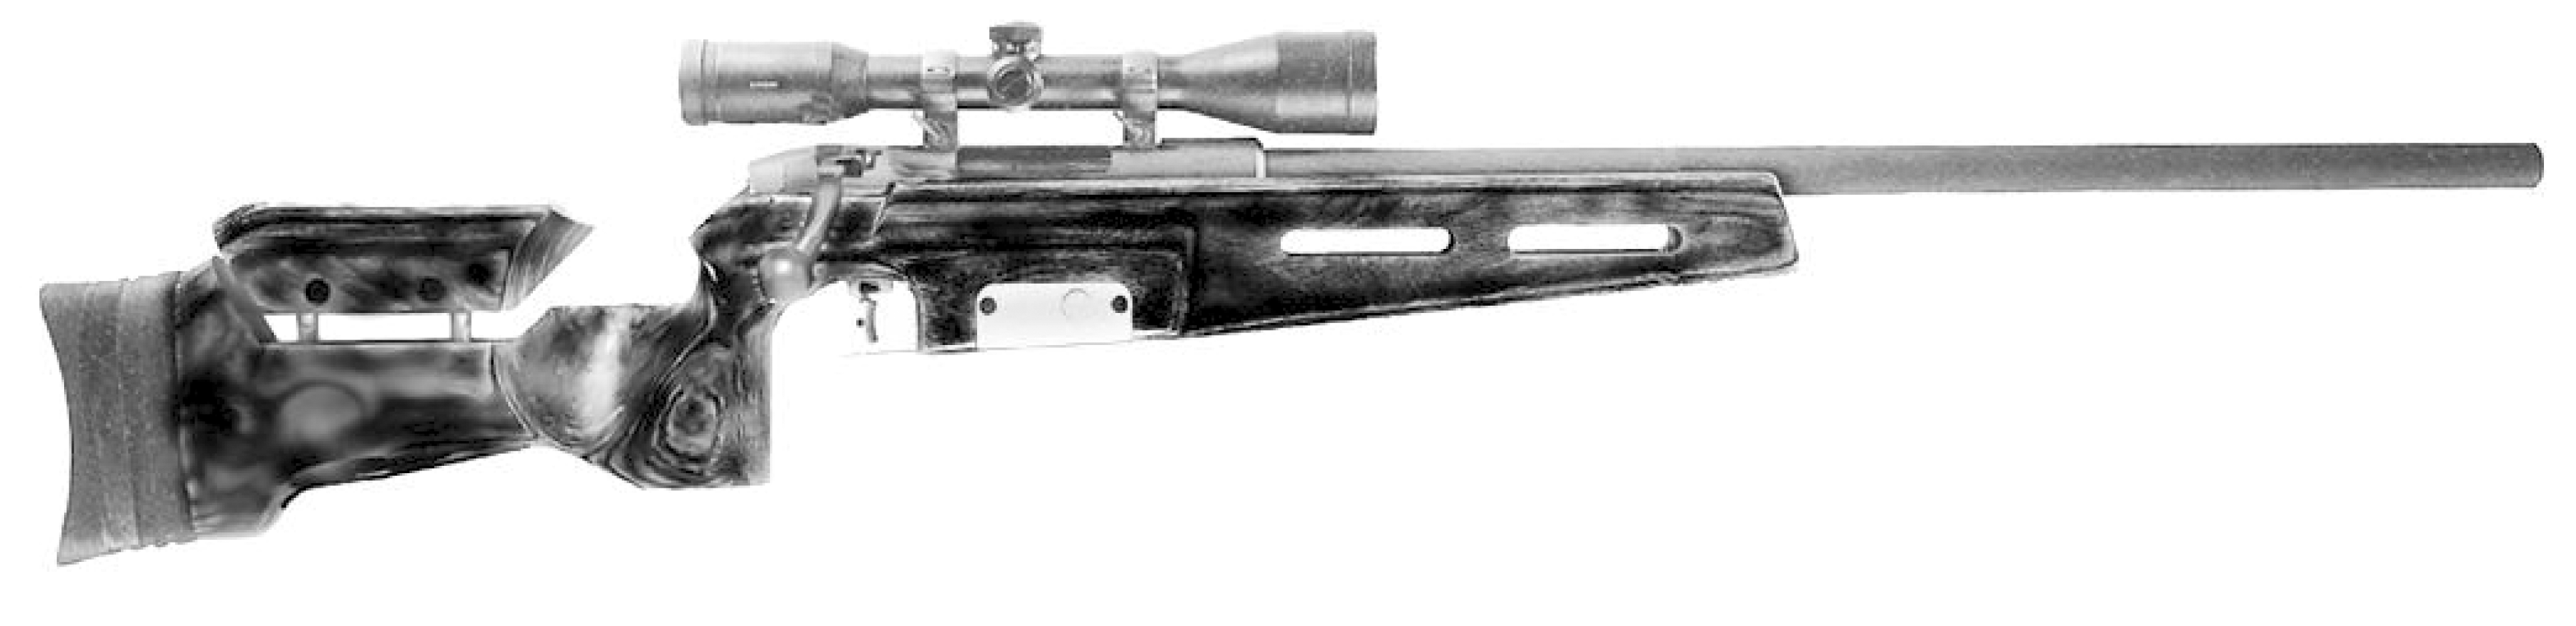 SBS CISM Rifle